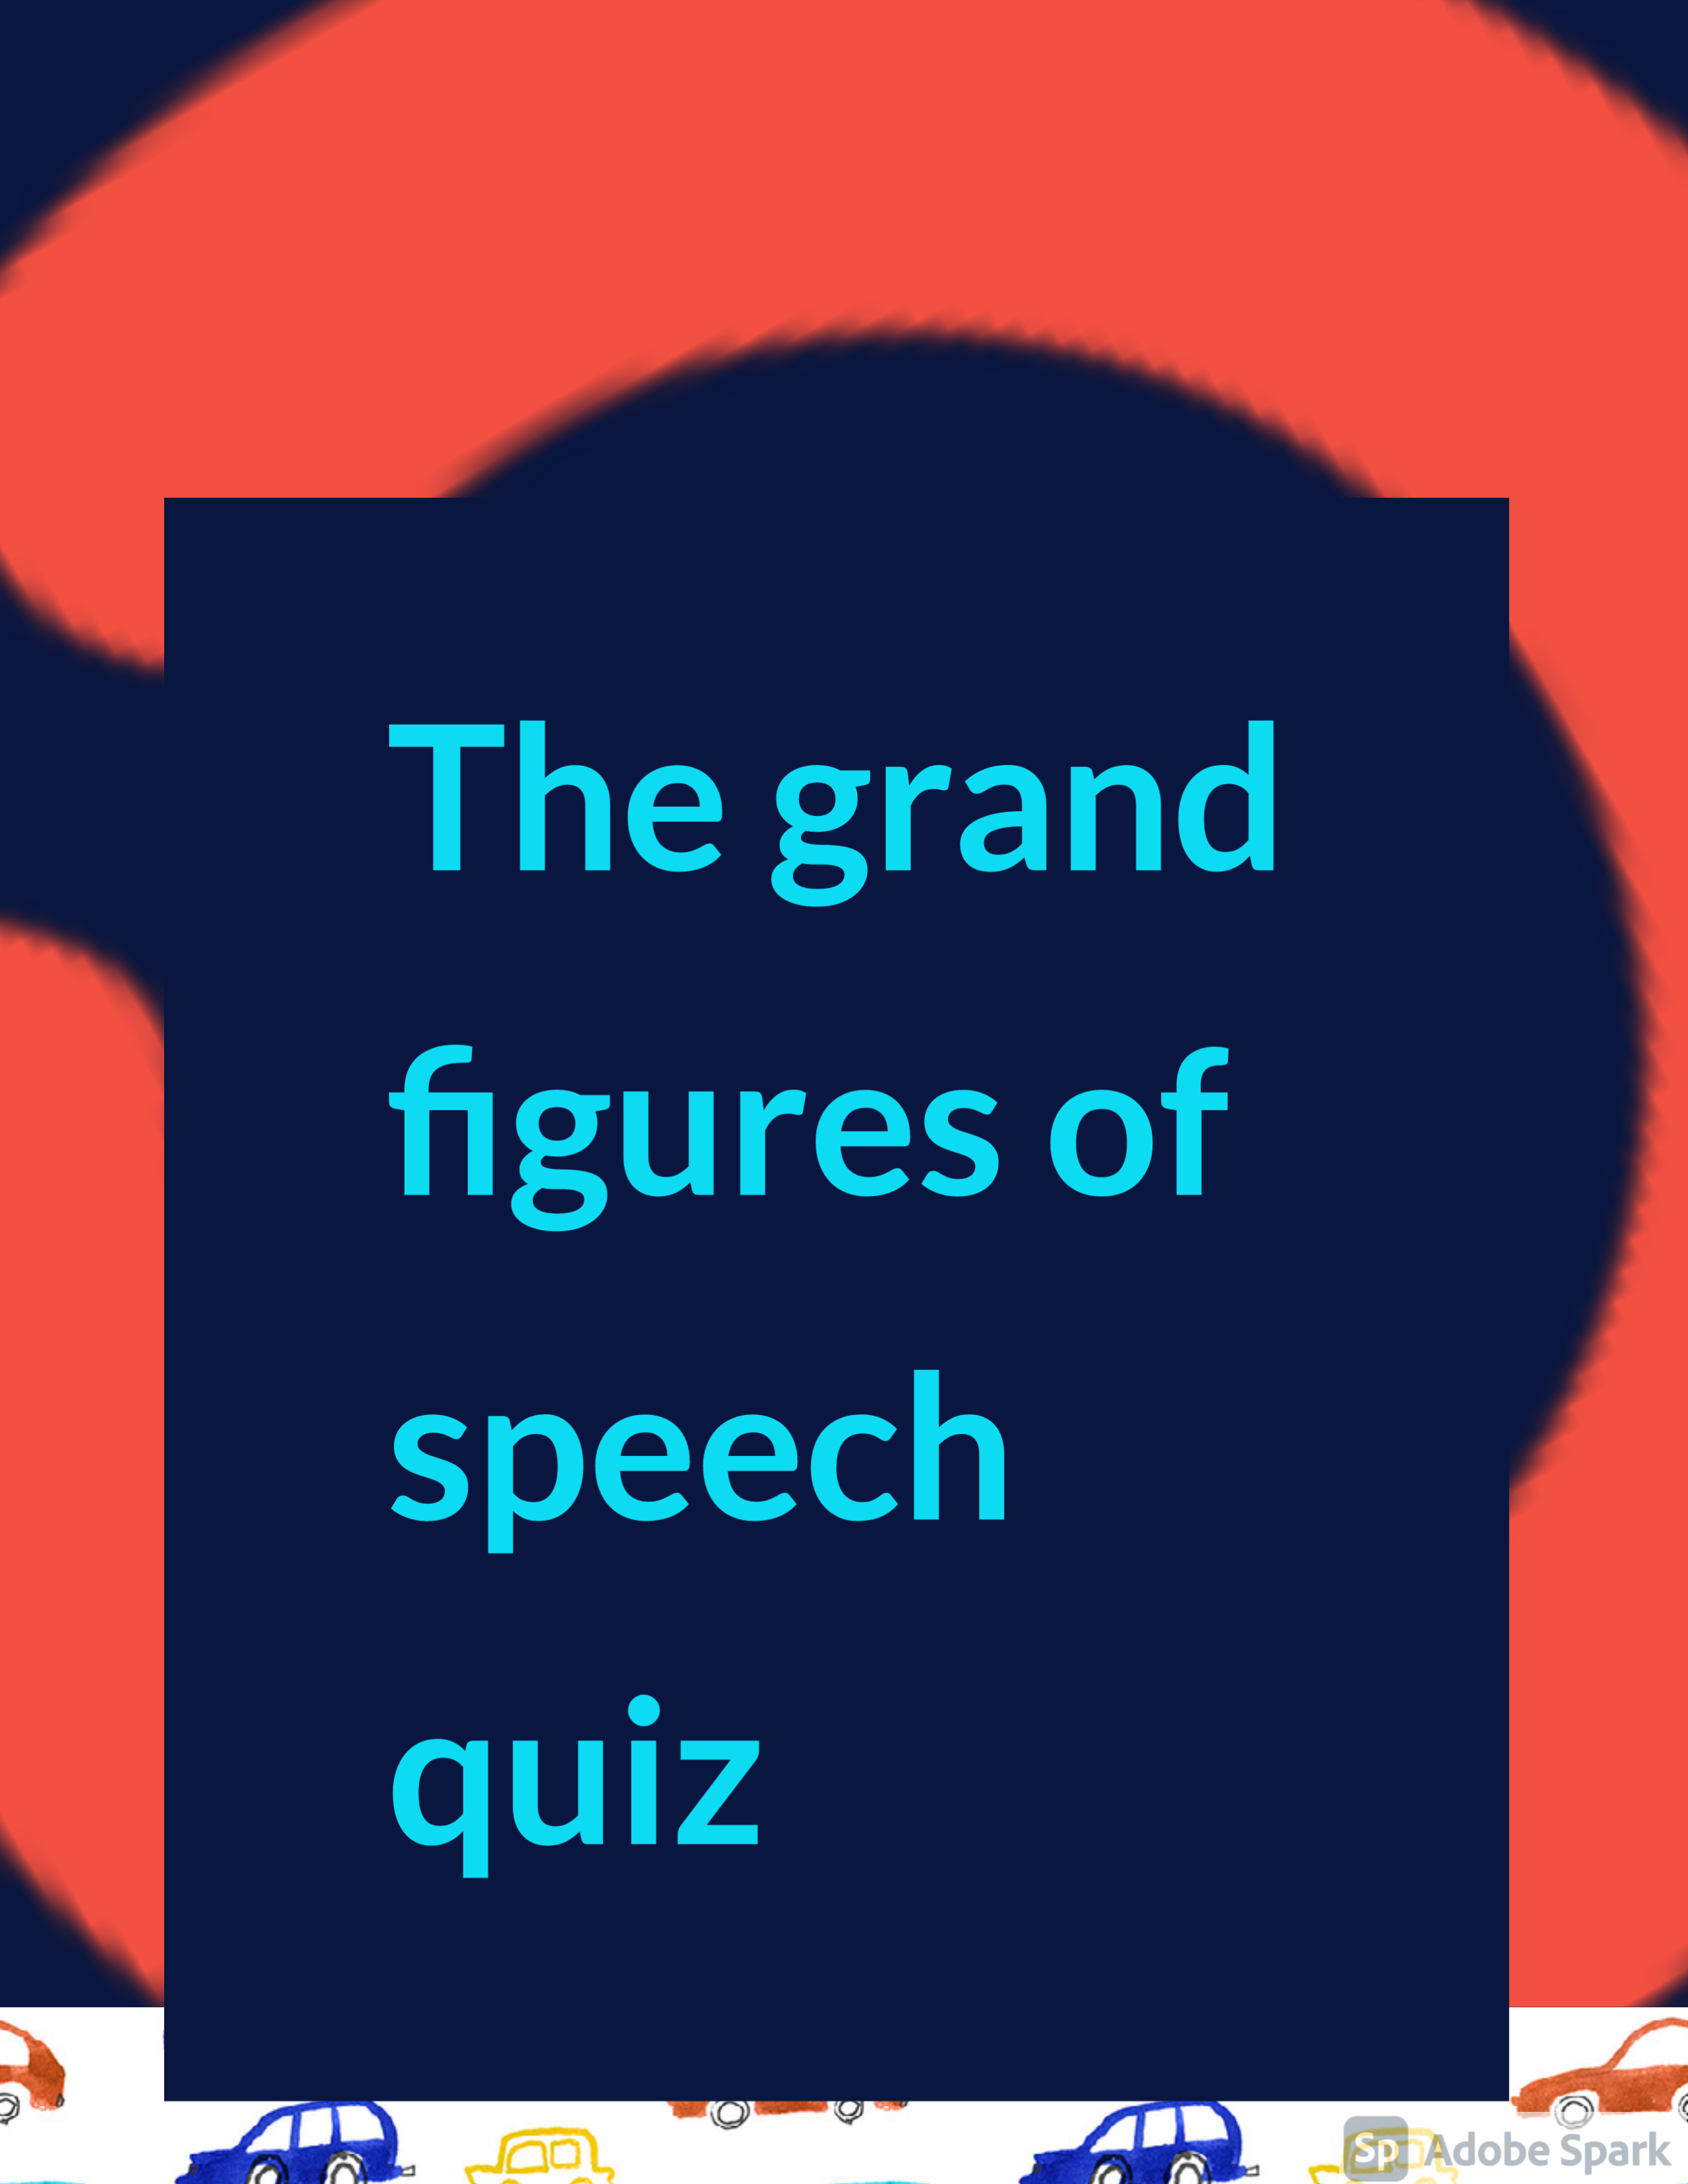 Speech - Class 7 - Quizizz